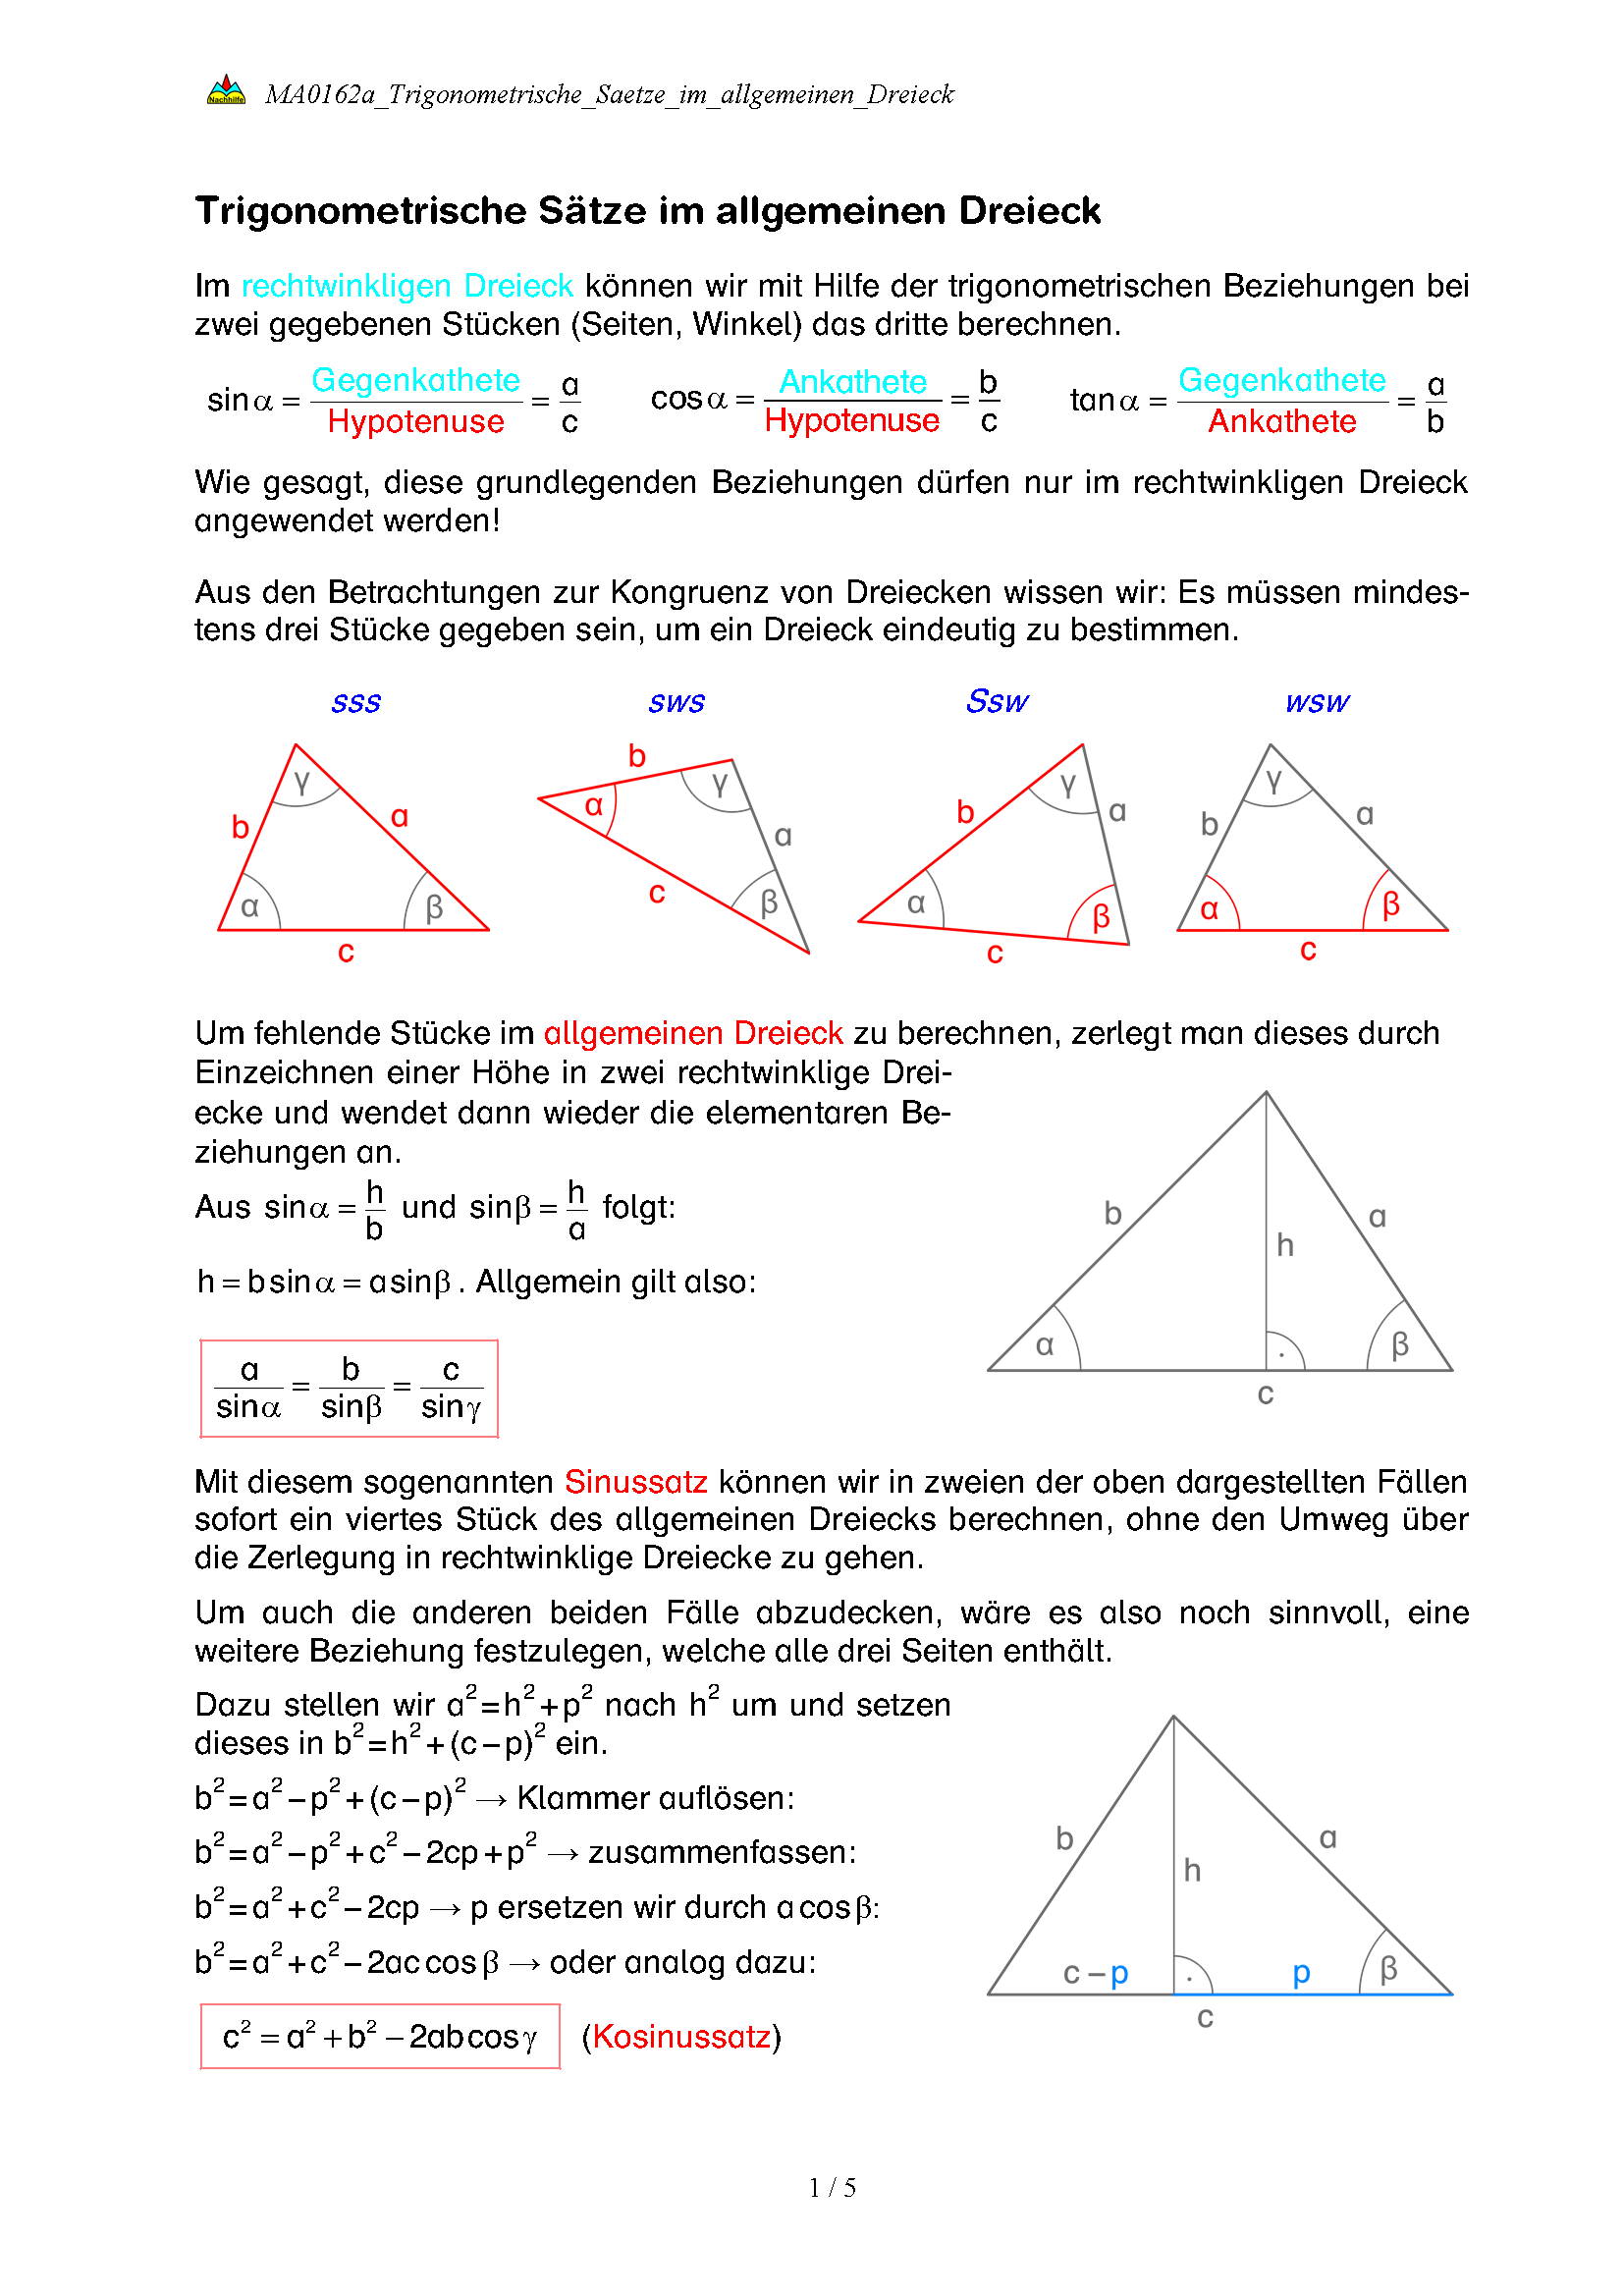 Trigonometrische Sätze im allgemeinen Dreieck